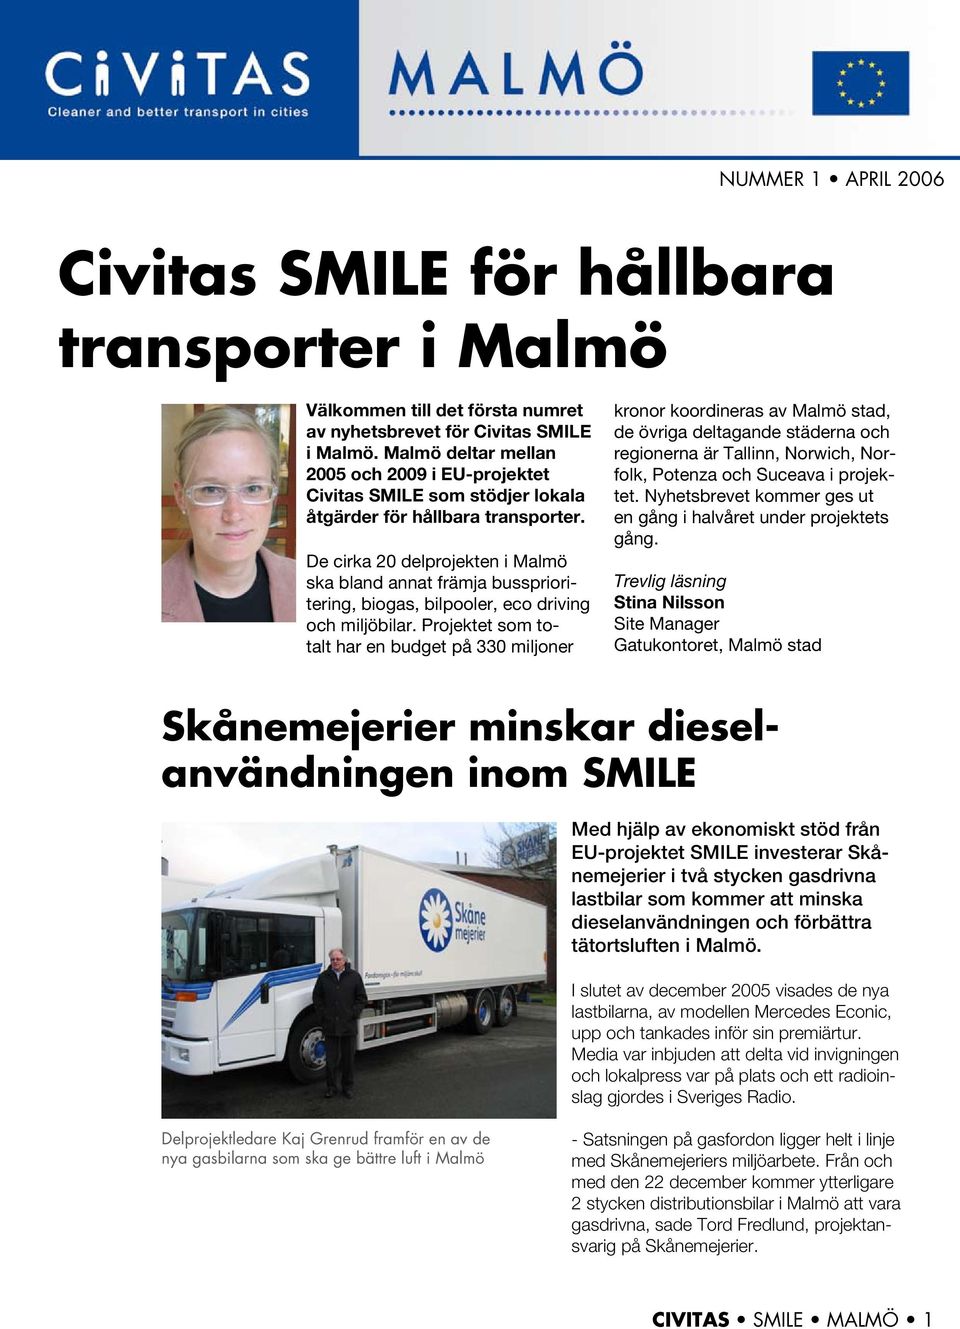 De cirka 20 delprojekten i Malmö ska bland annat främja bussprioritering, biogas, bilpooler, eco driving och miljöbilar.